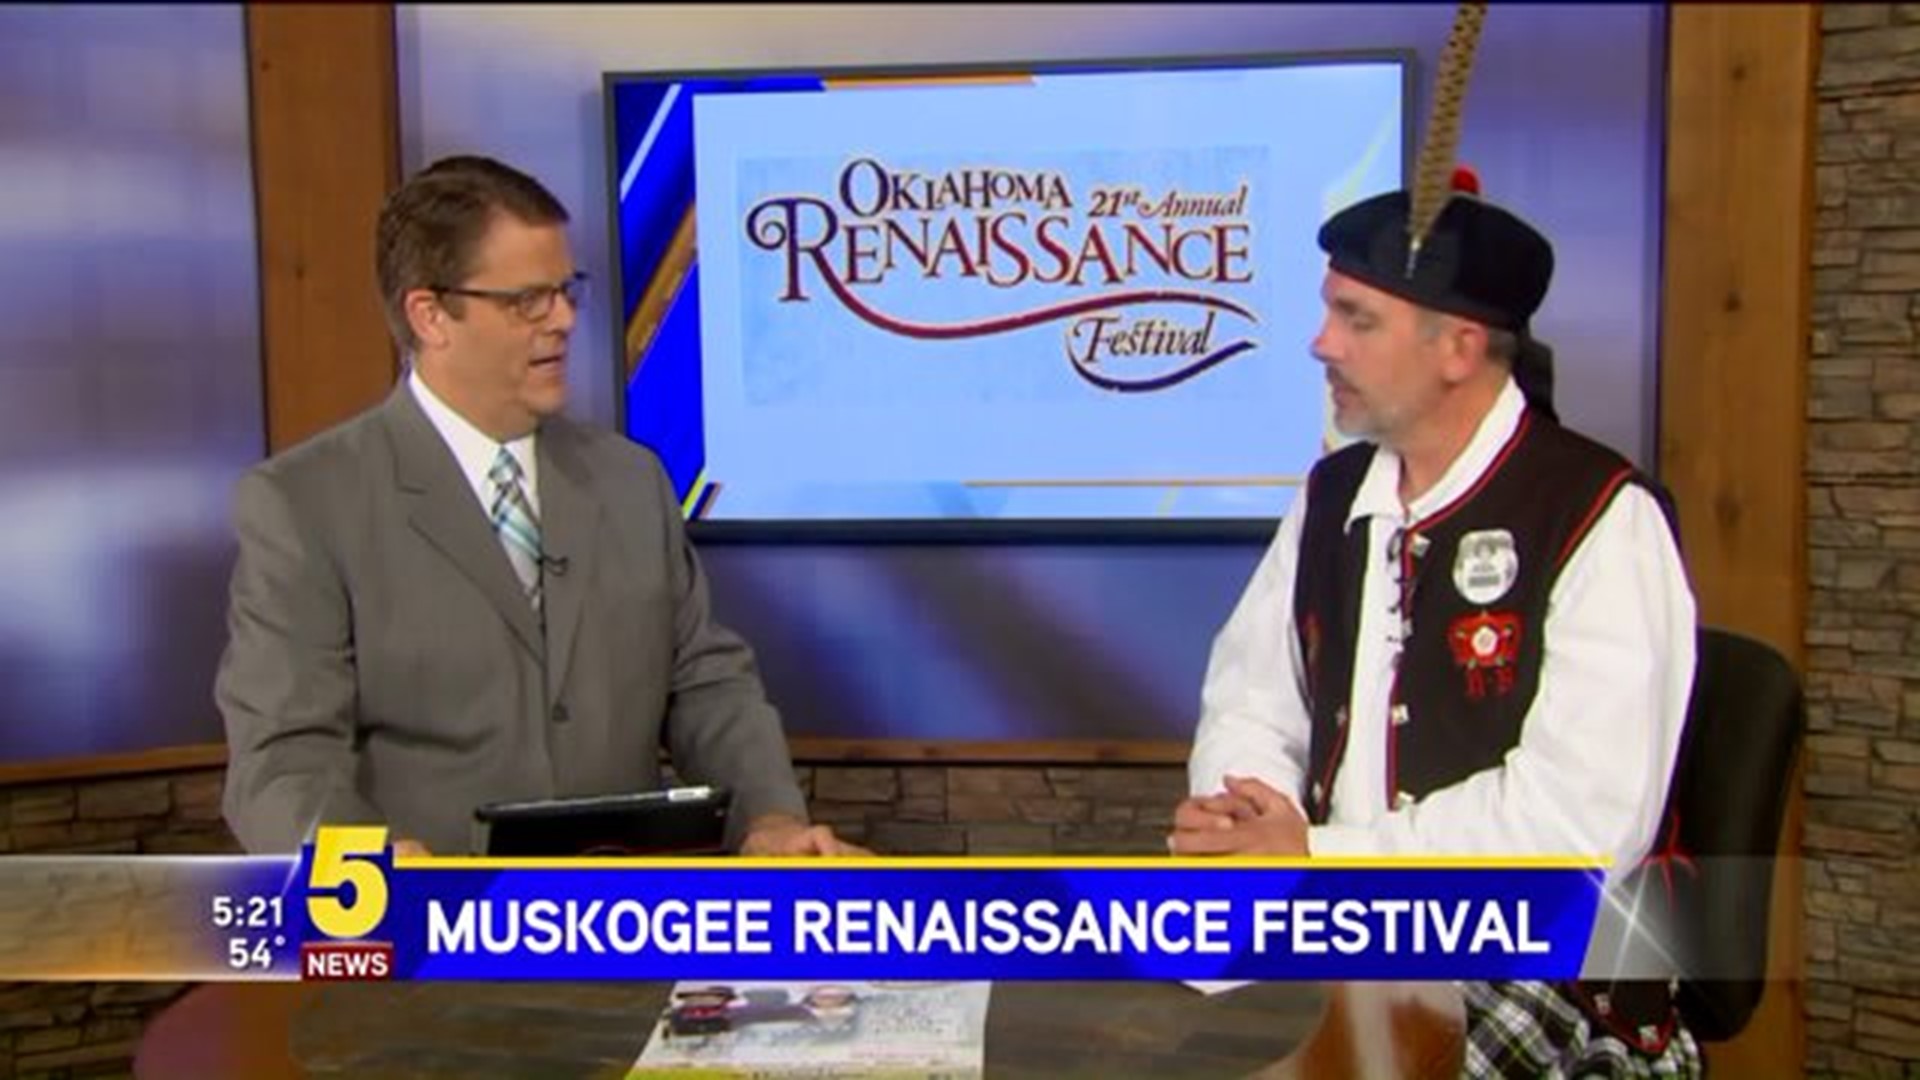 Muskogee Renaissance Festival